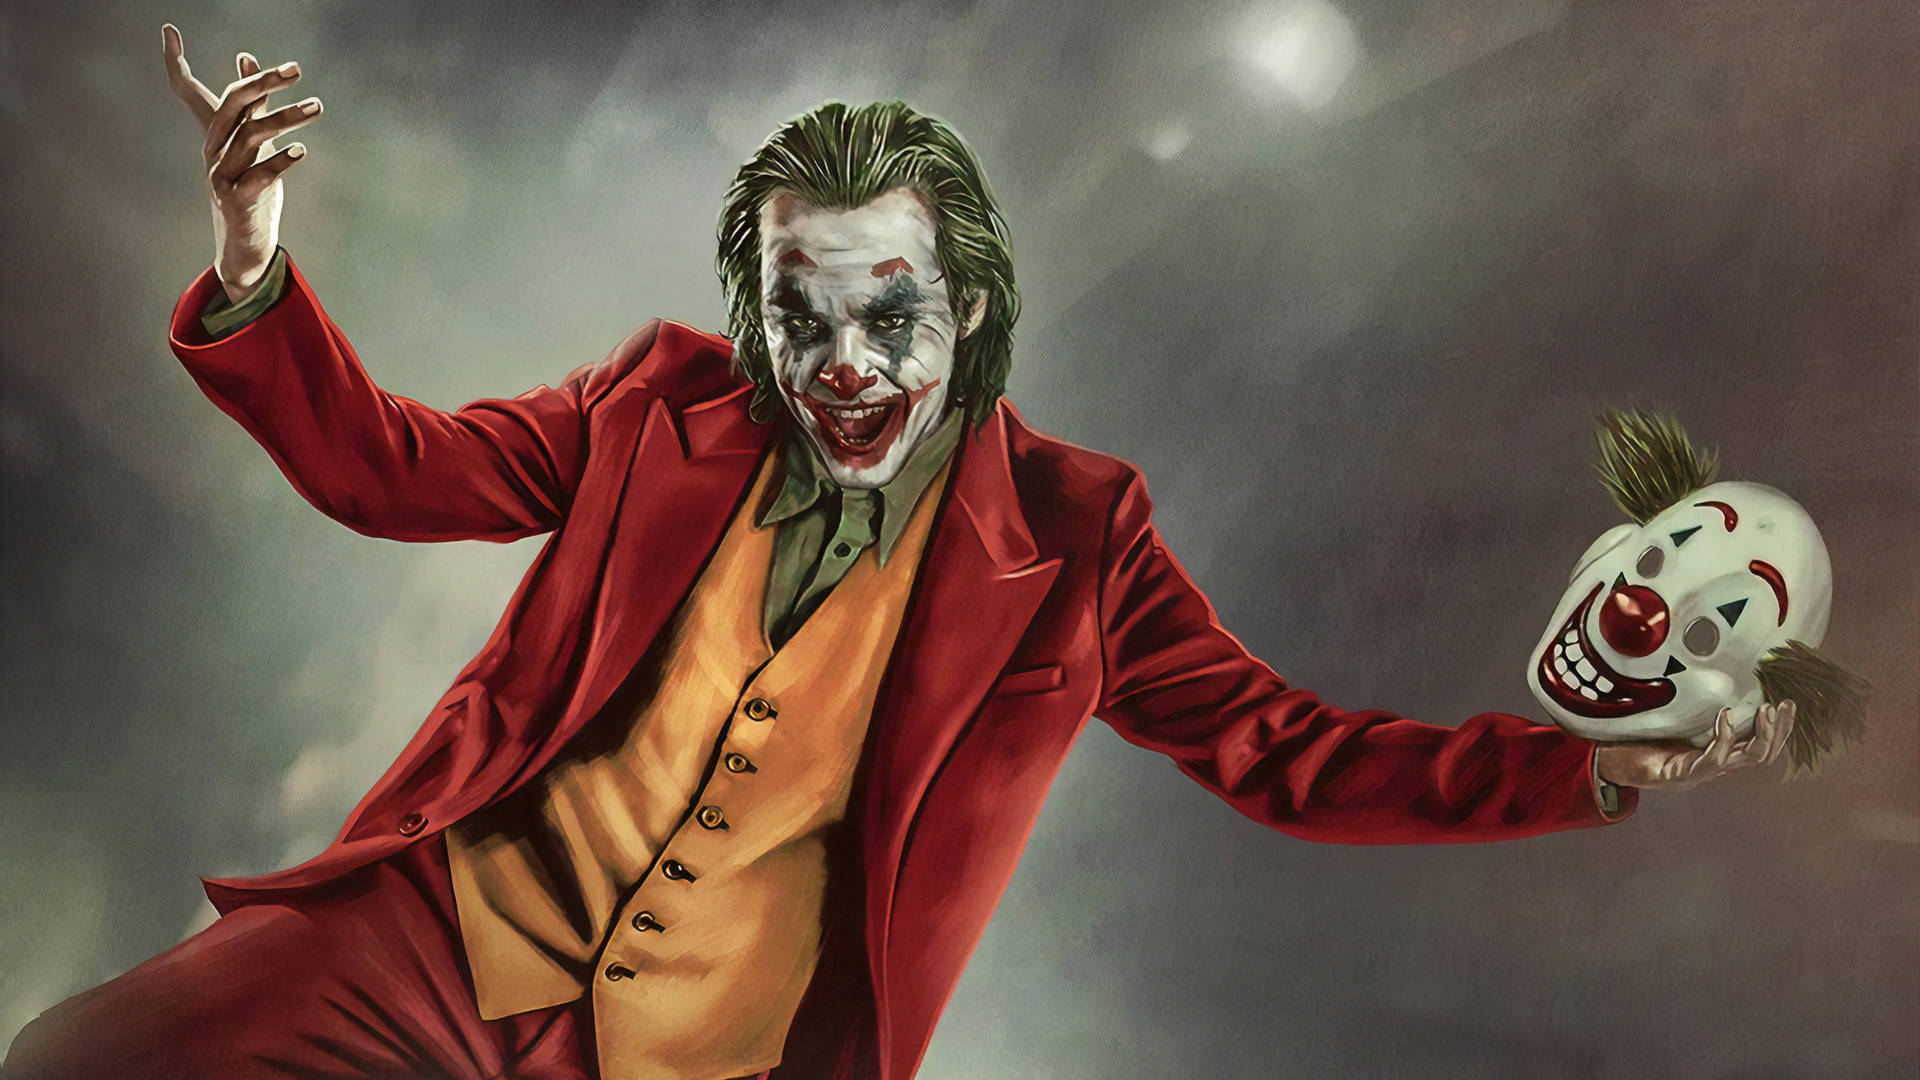 Joker 2020 Holding A Clown Mask Wallpaper